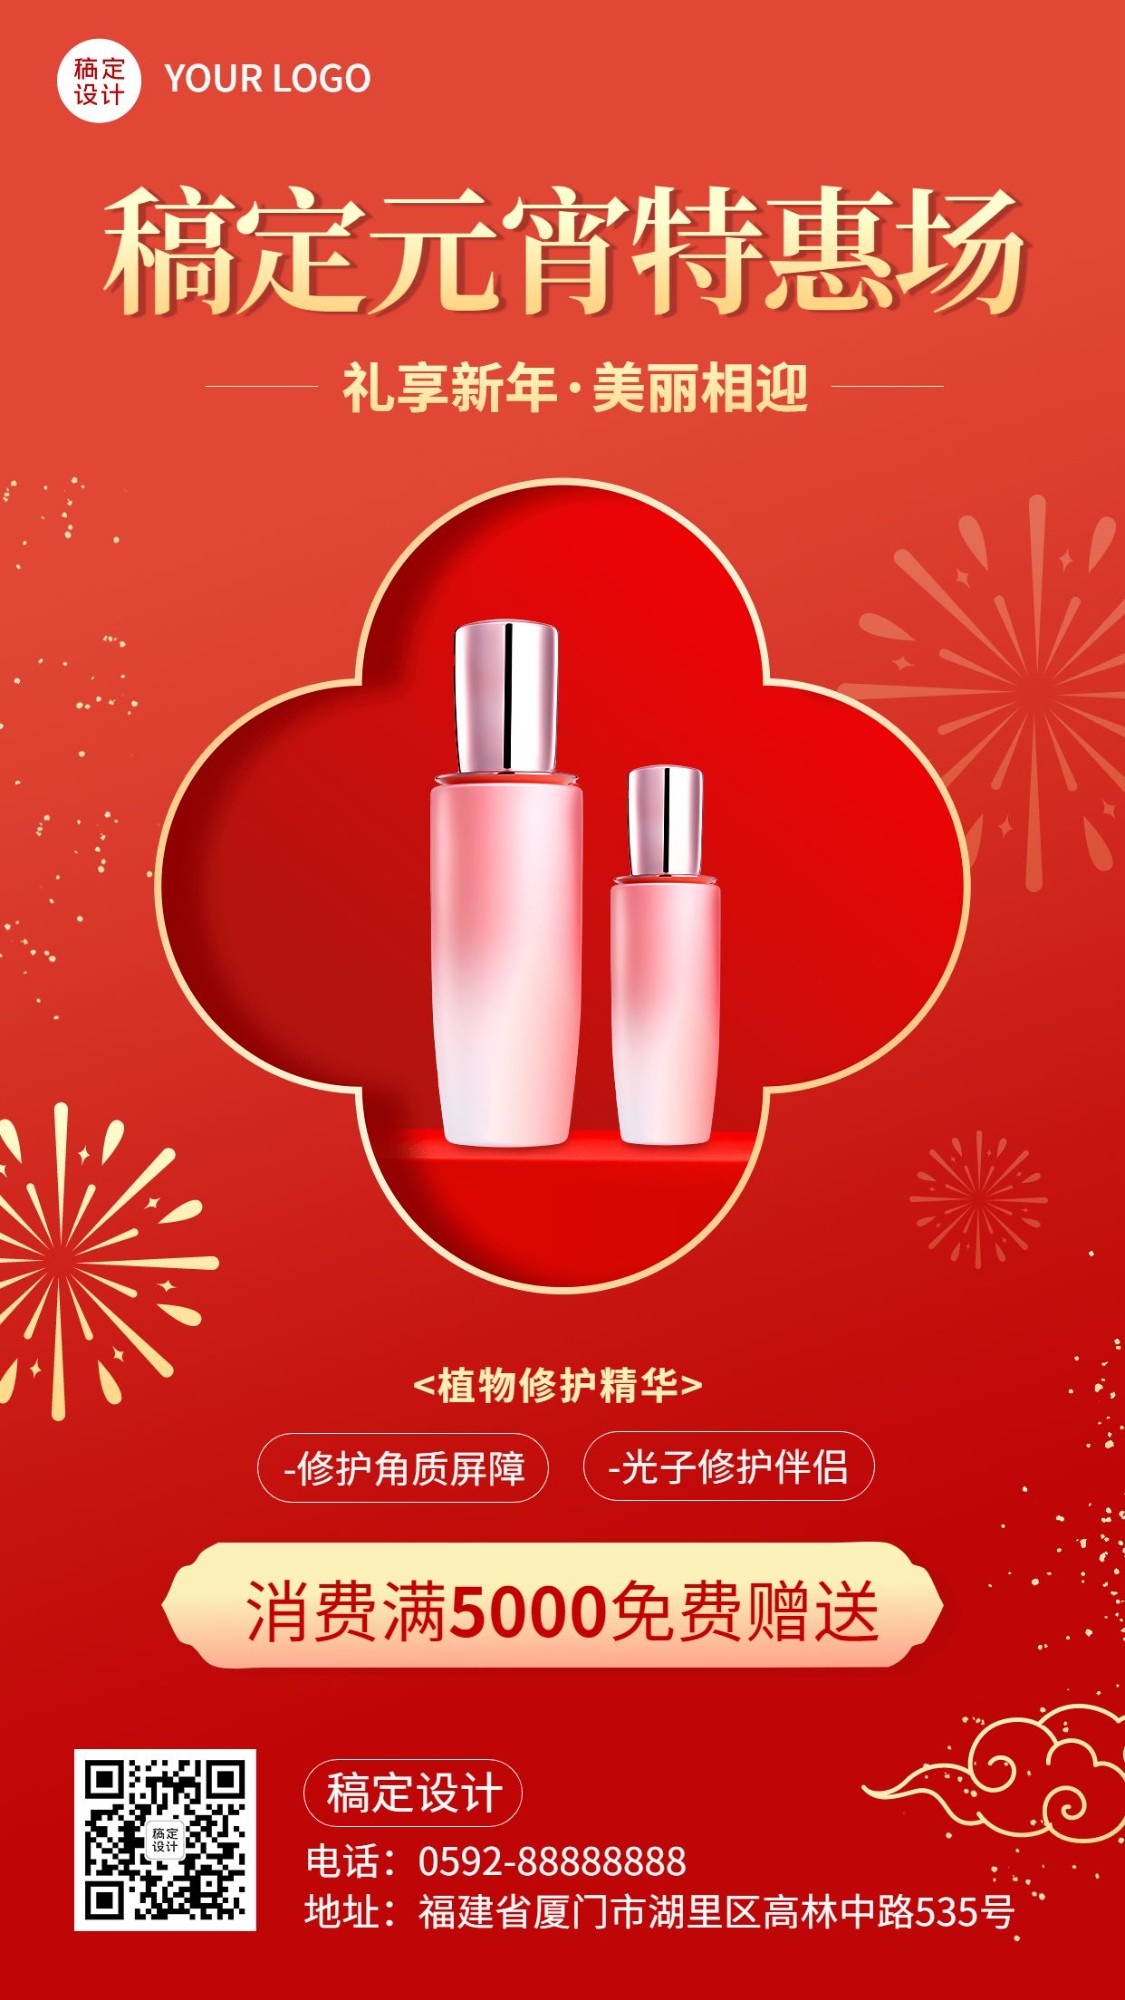 元宵节美容美妆产品展示促销喜庆手机海报